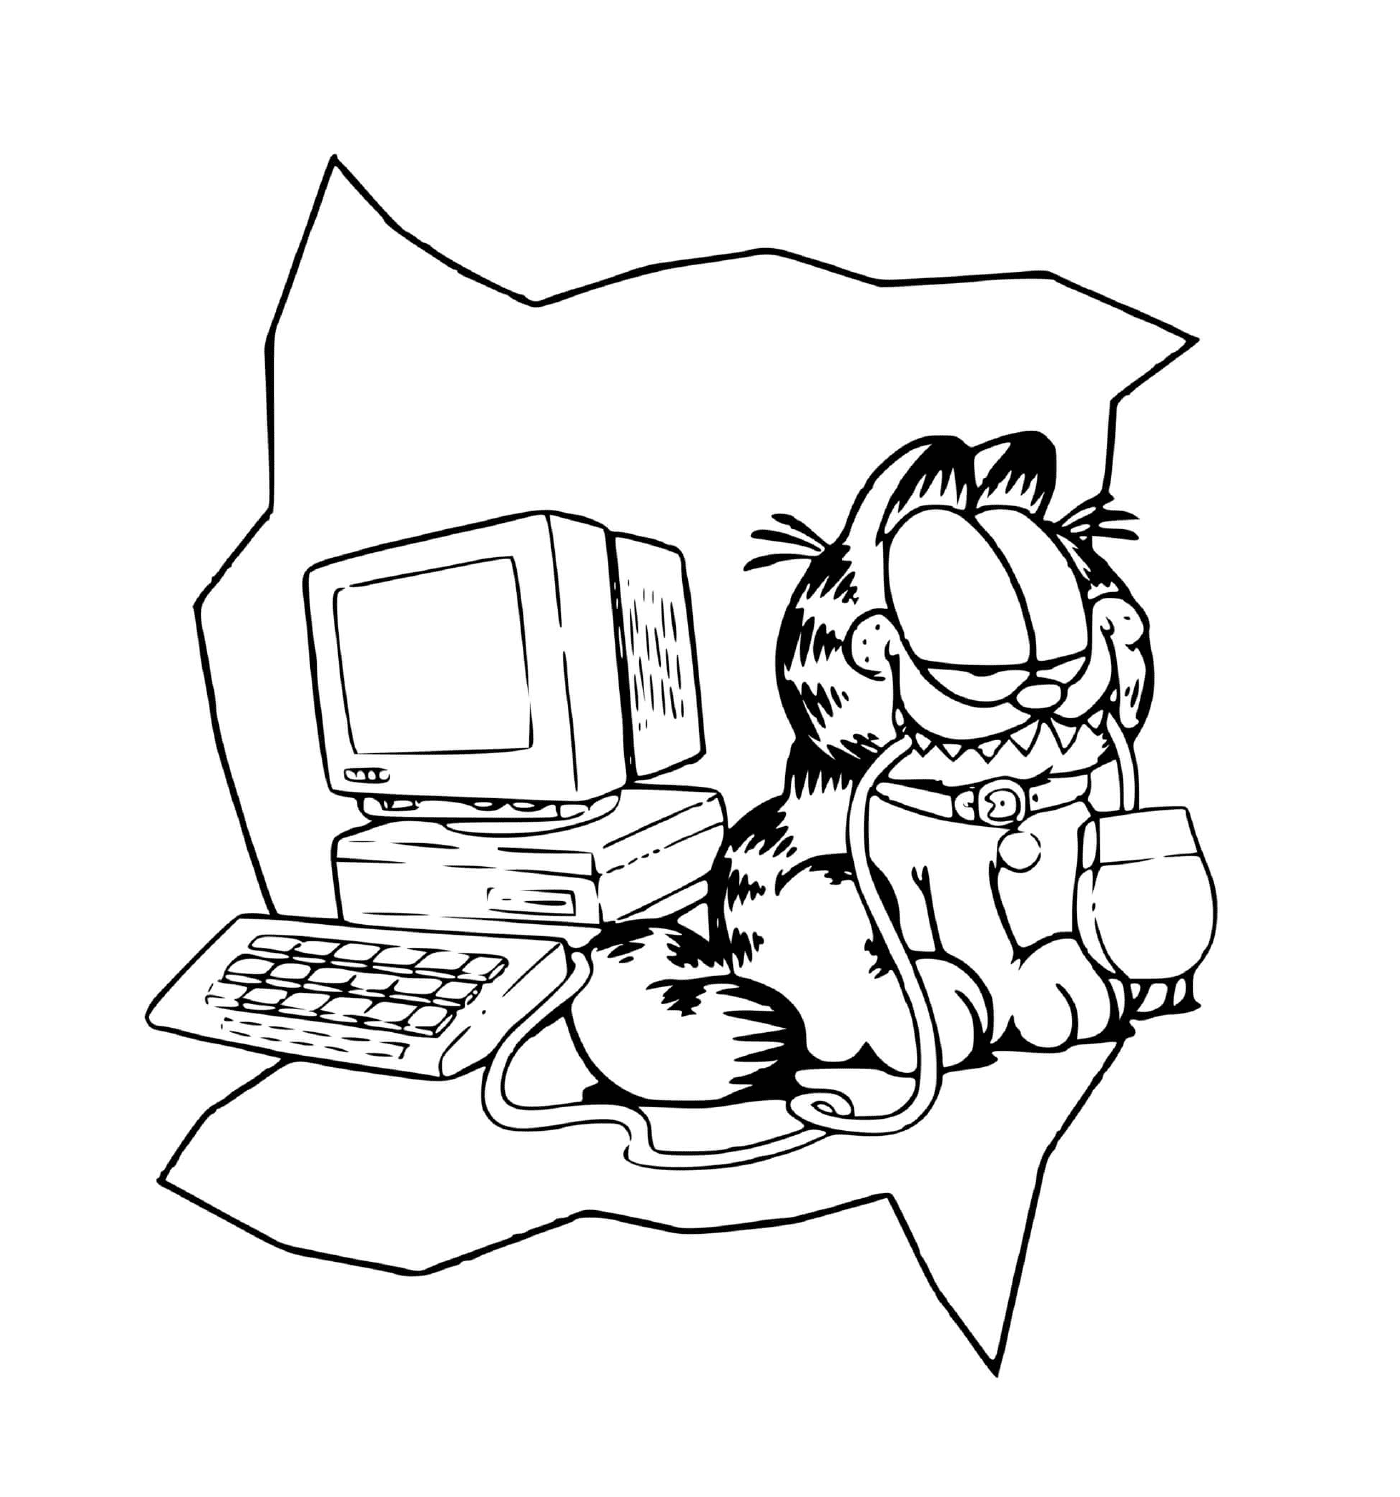  A Garfield le gusta jugar con una computadora 